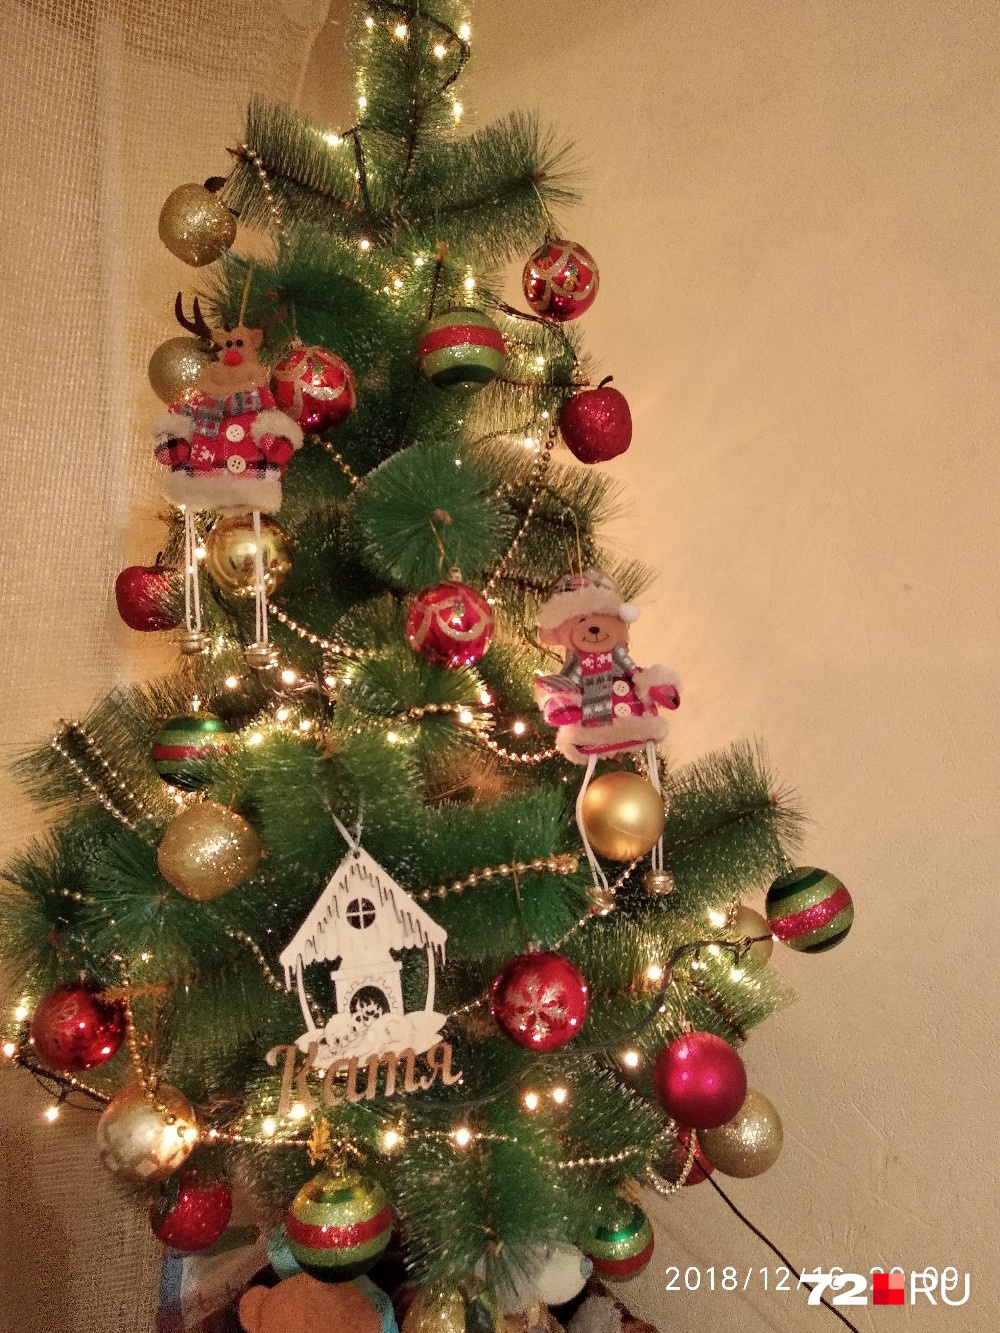 Это новогоднее деревце будто перенеслось со страниц добрых детских сказок. И мишка тут есть, и снежинки с колокольчиками